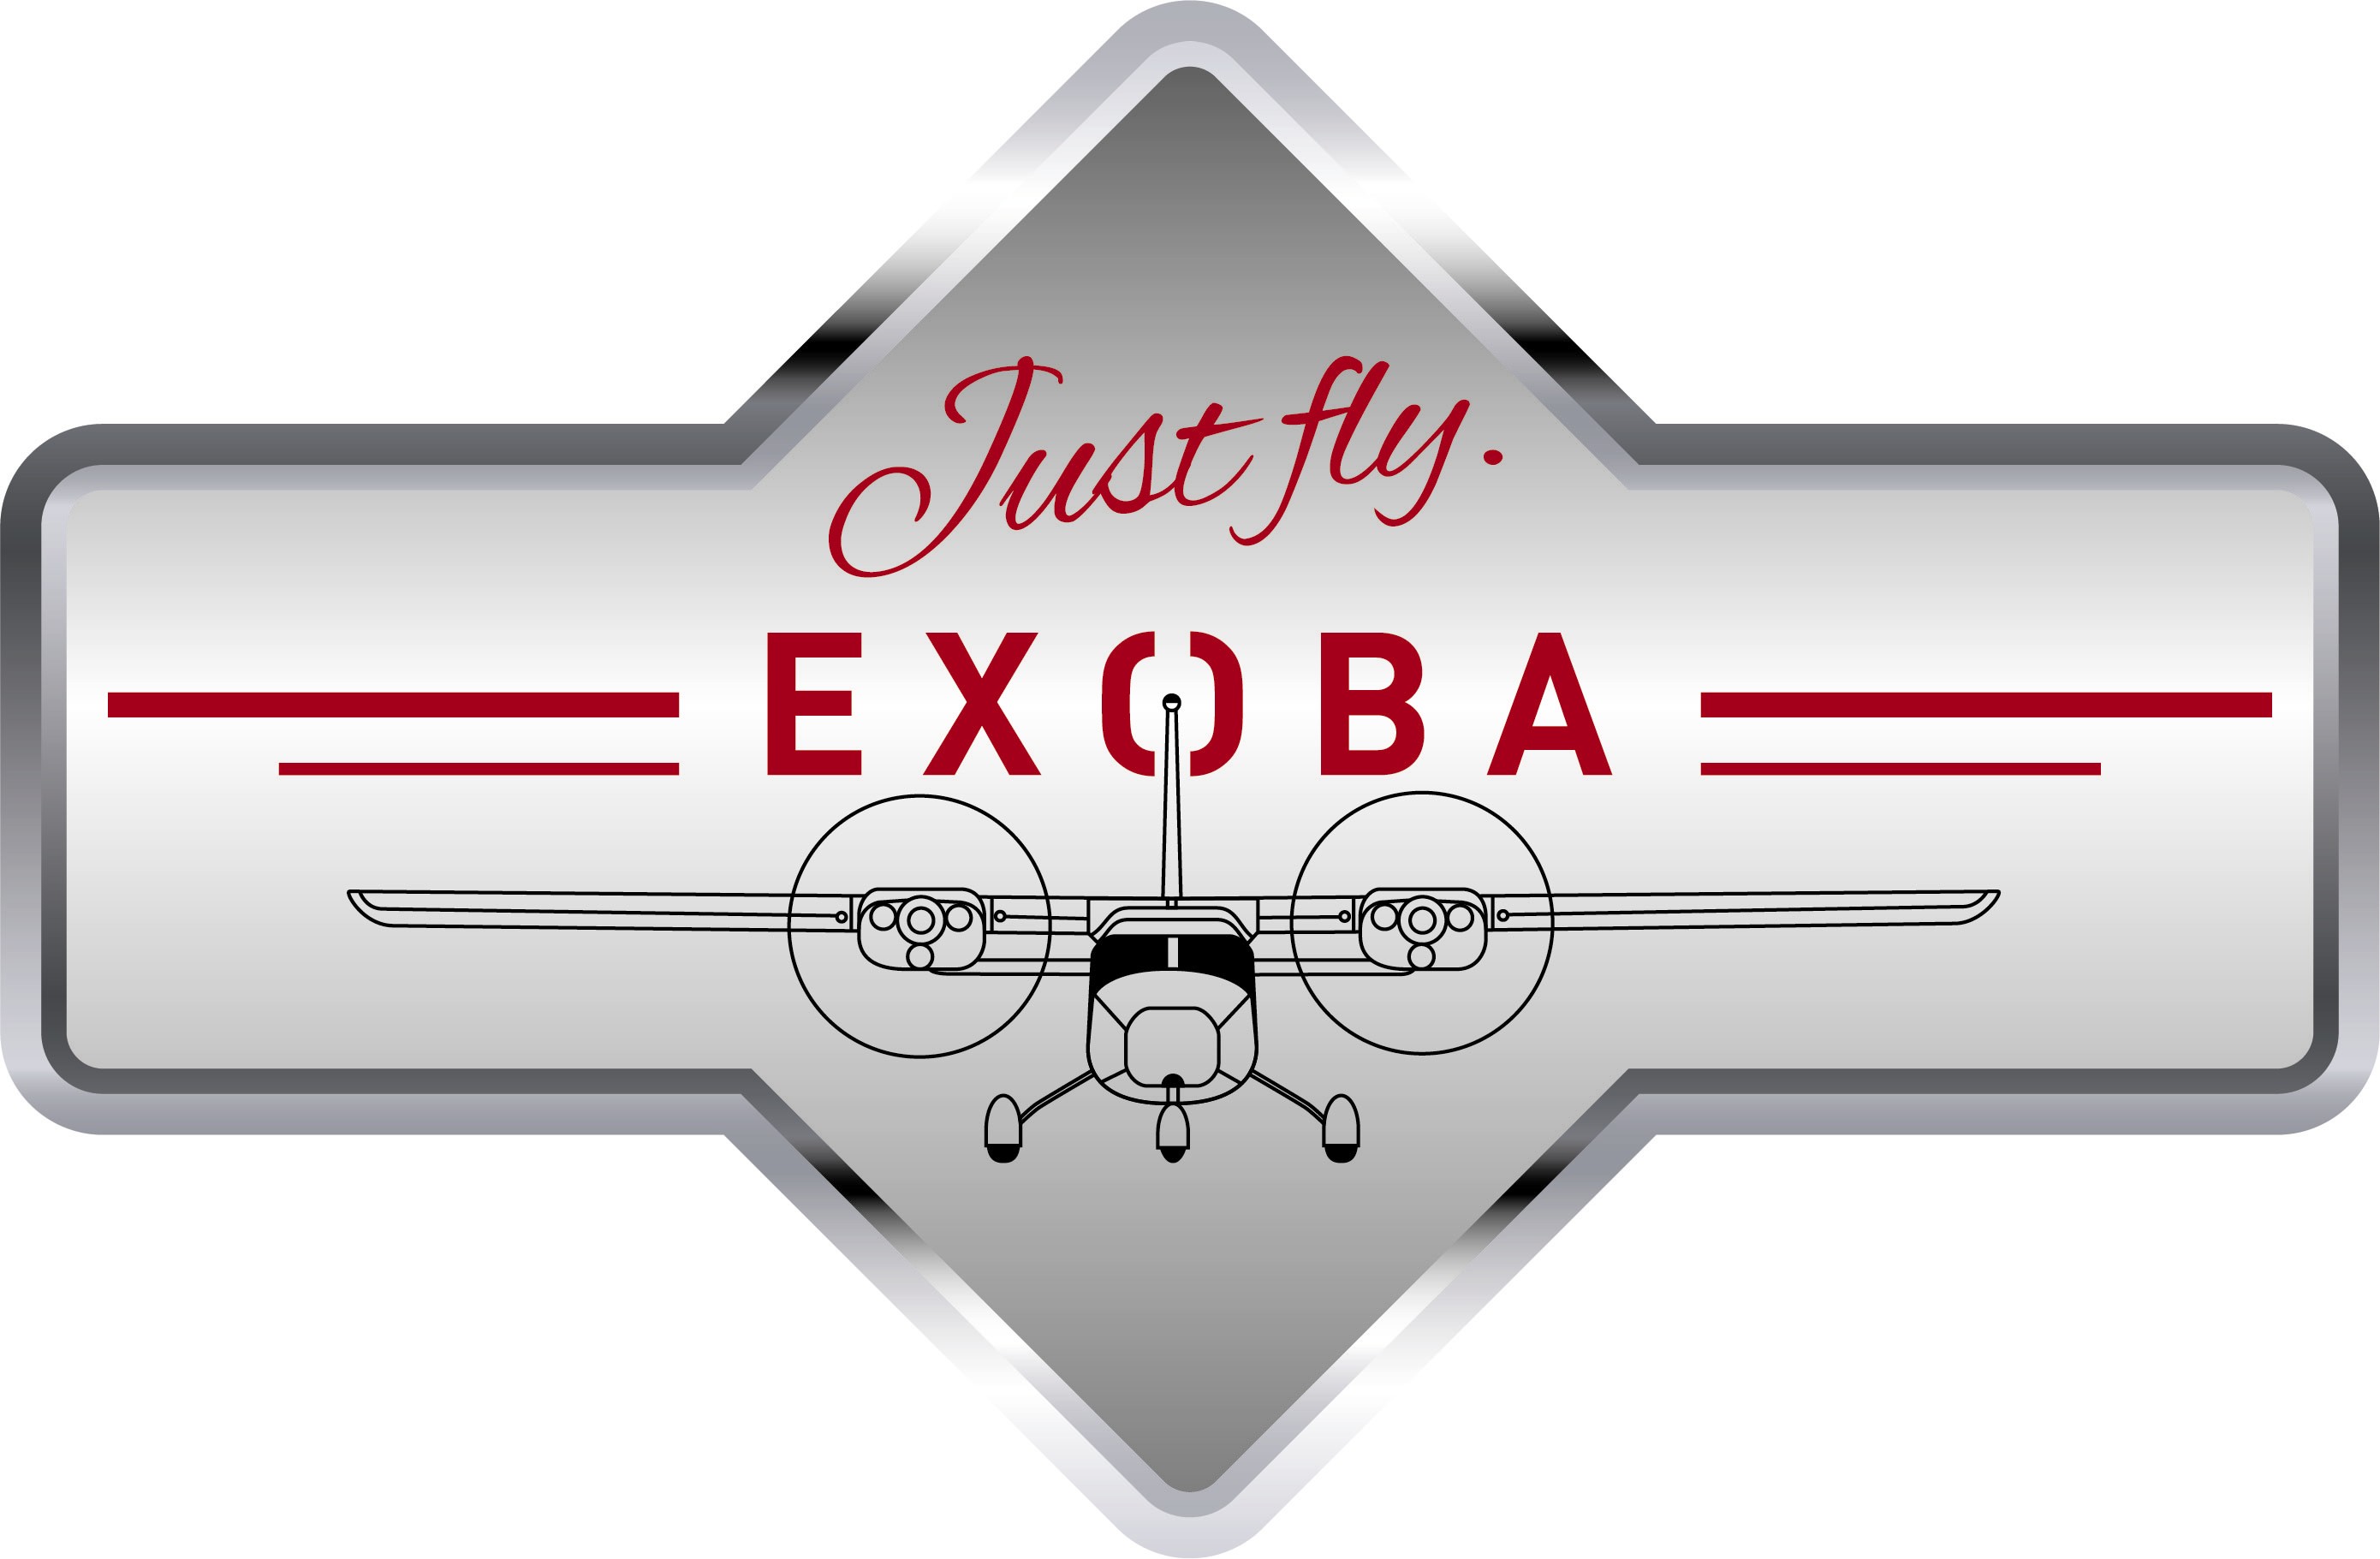 Exoba Airtaxi